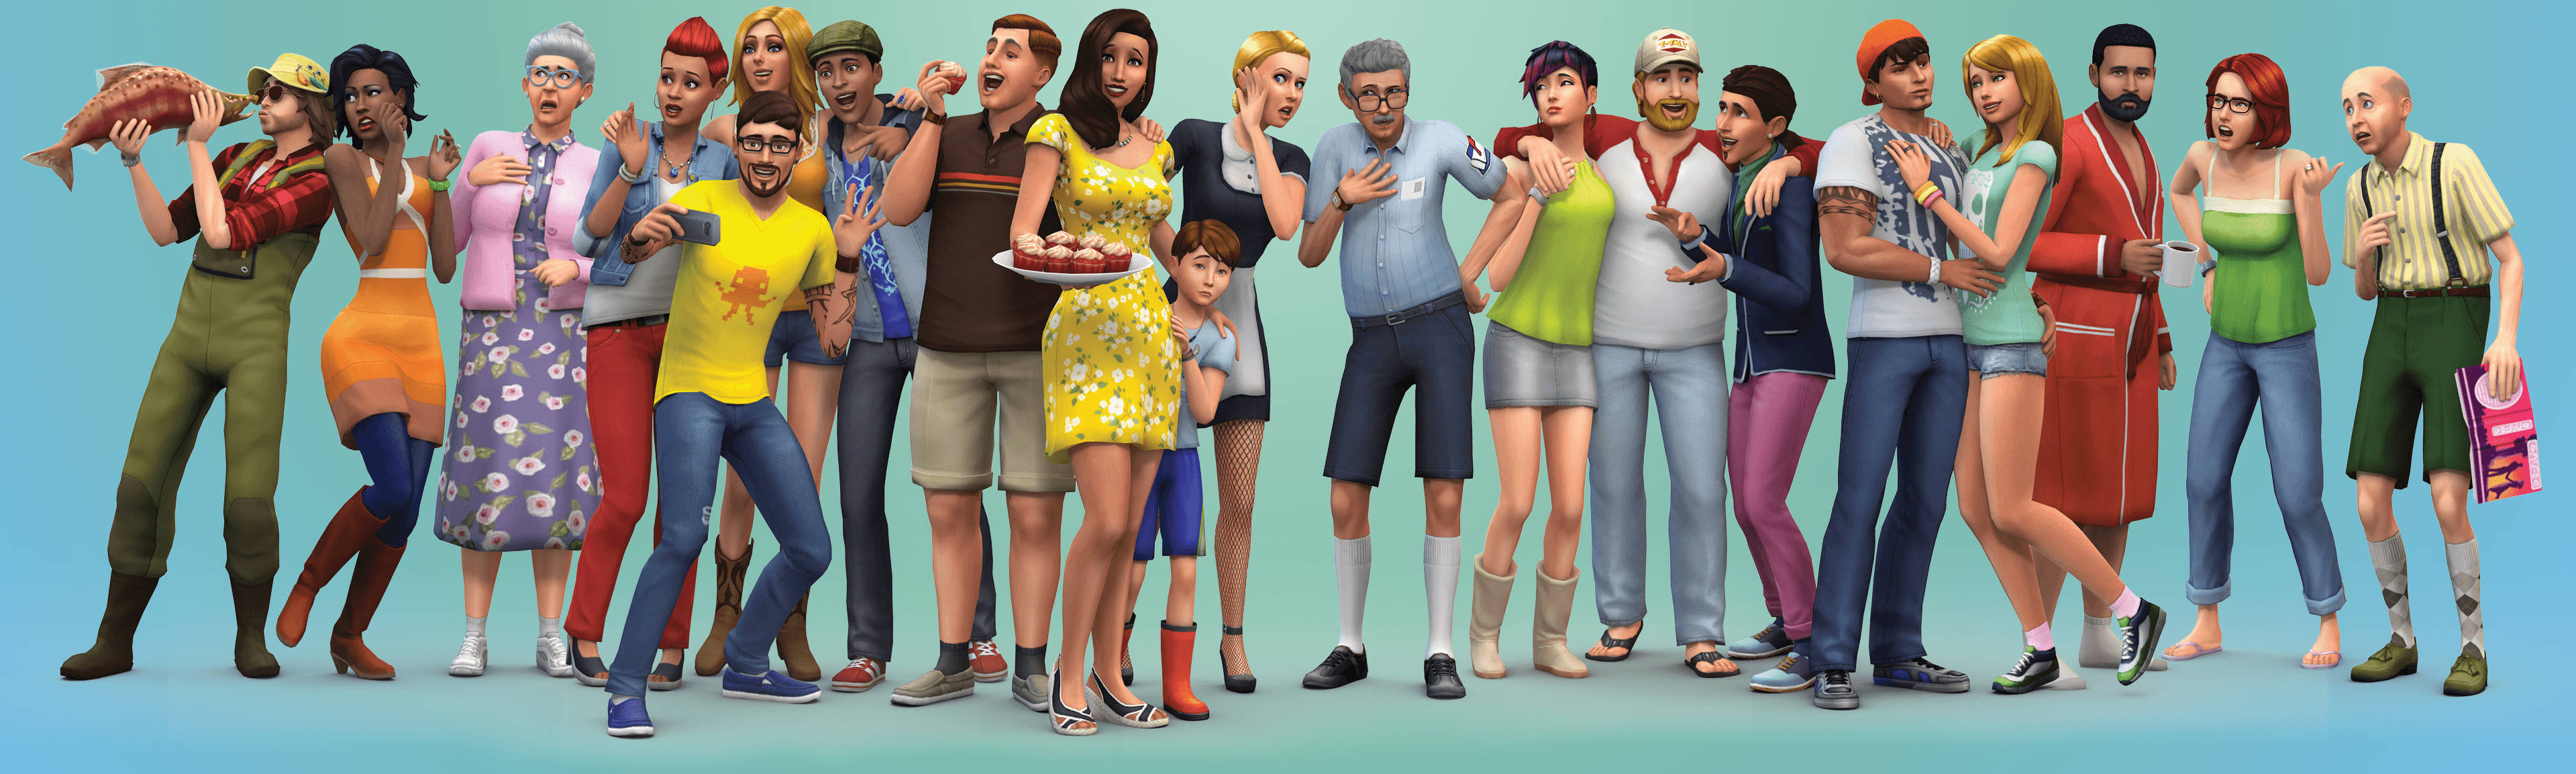 Panoramalos Sims Fondo de pantalla